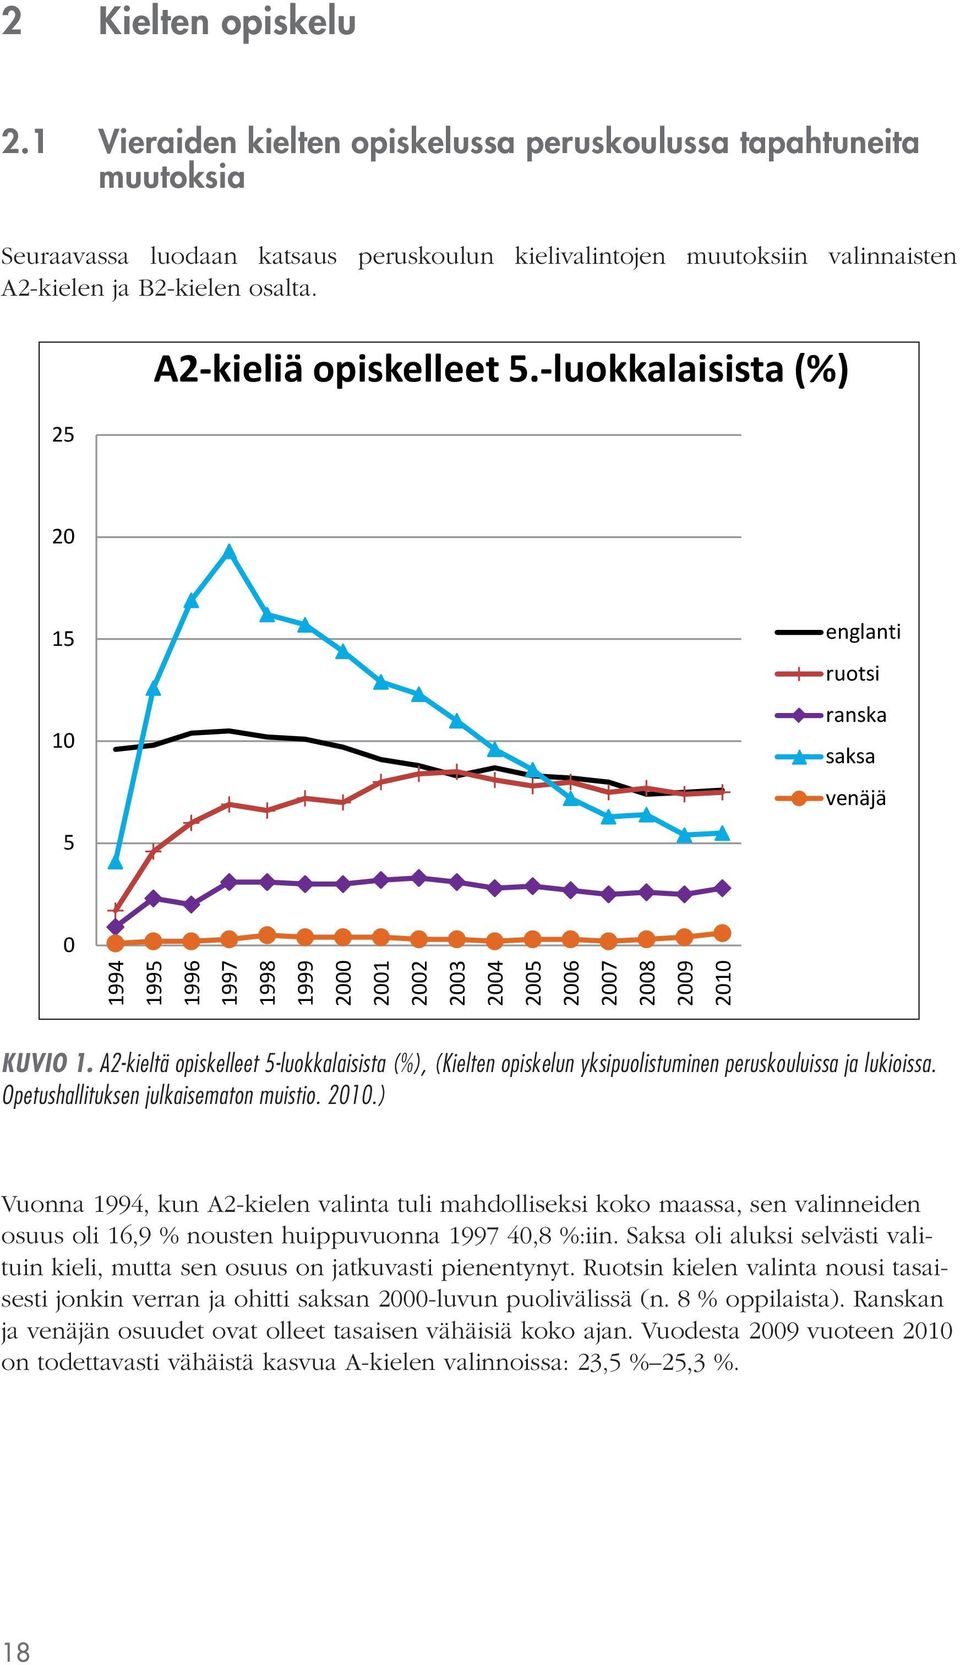 A2-kieltä opiskelleet 5-luokkalaisista (%), (Kielten opiskelun yksipuolistuminen peruskouluissa ja lukioissa. Opetushallituksen julkaisematon muistio. 2010.